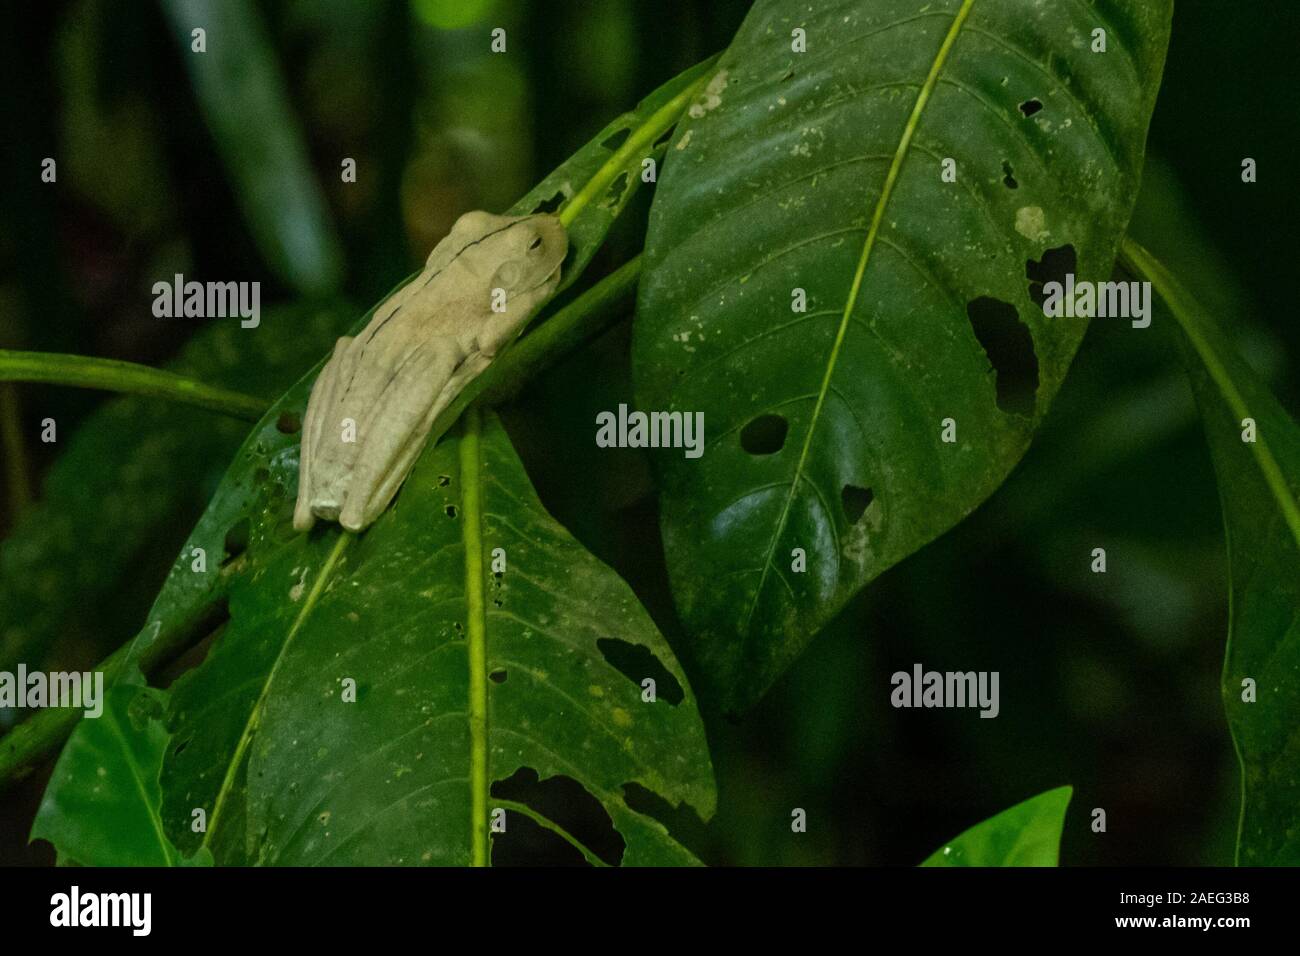 Hypsiboas rosenbergi (common names: Rosenberg's treefrog, Rosenberg's gladiator frog, or Rosenberg's gladiator treefrog) is a species of frog in the f Stock Photo